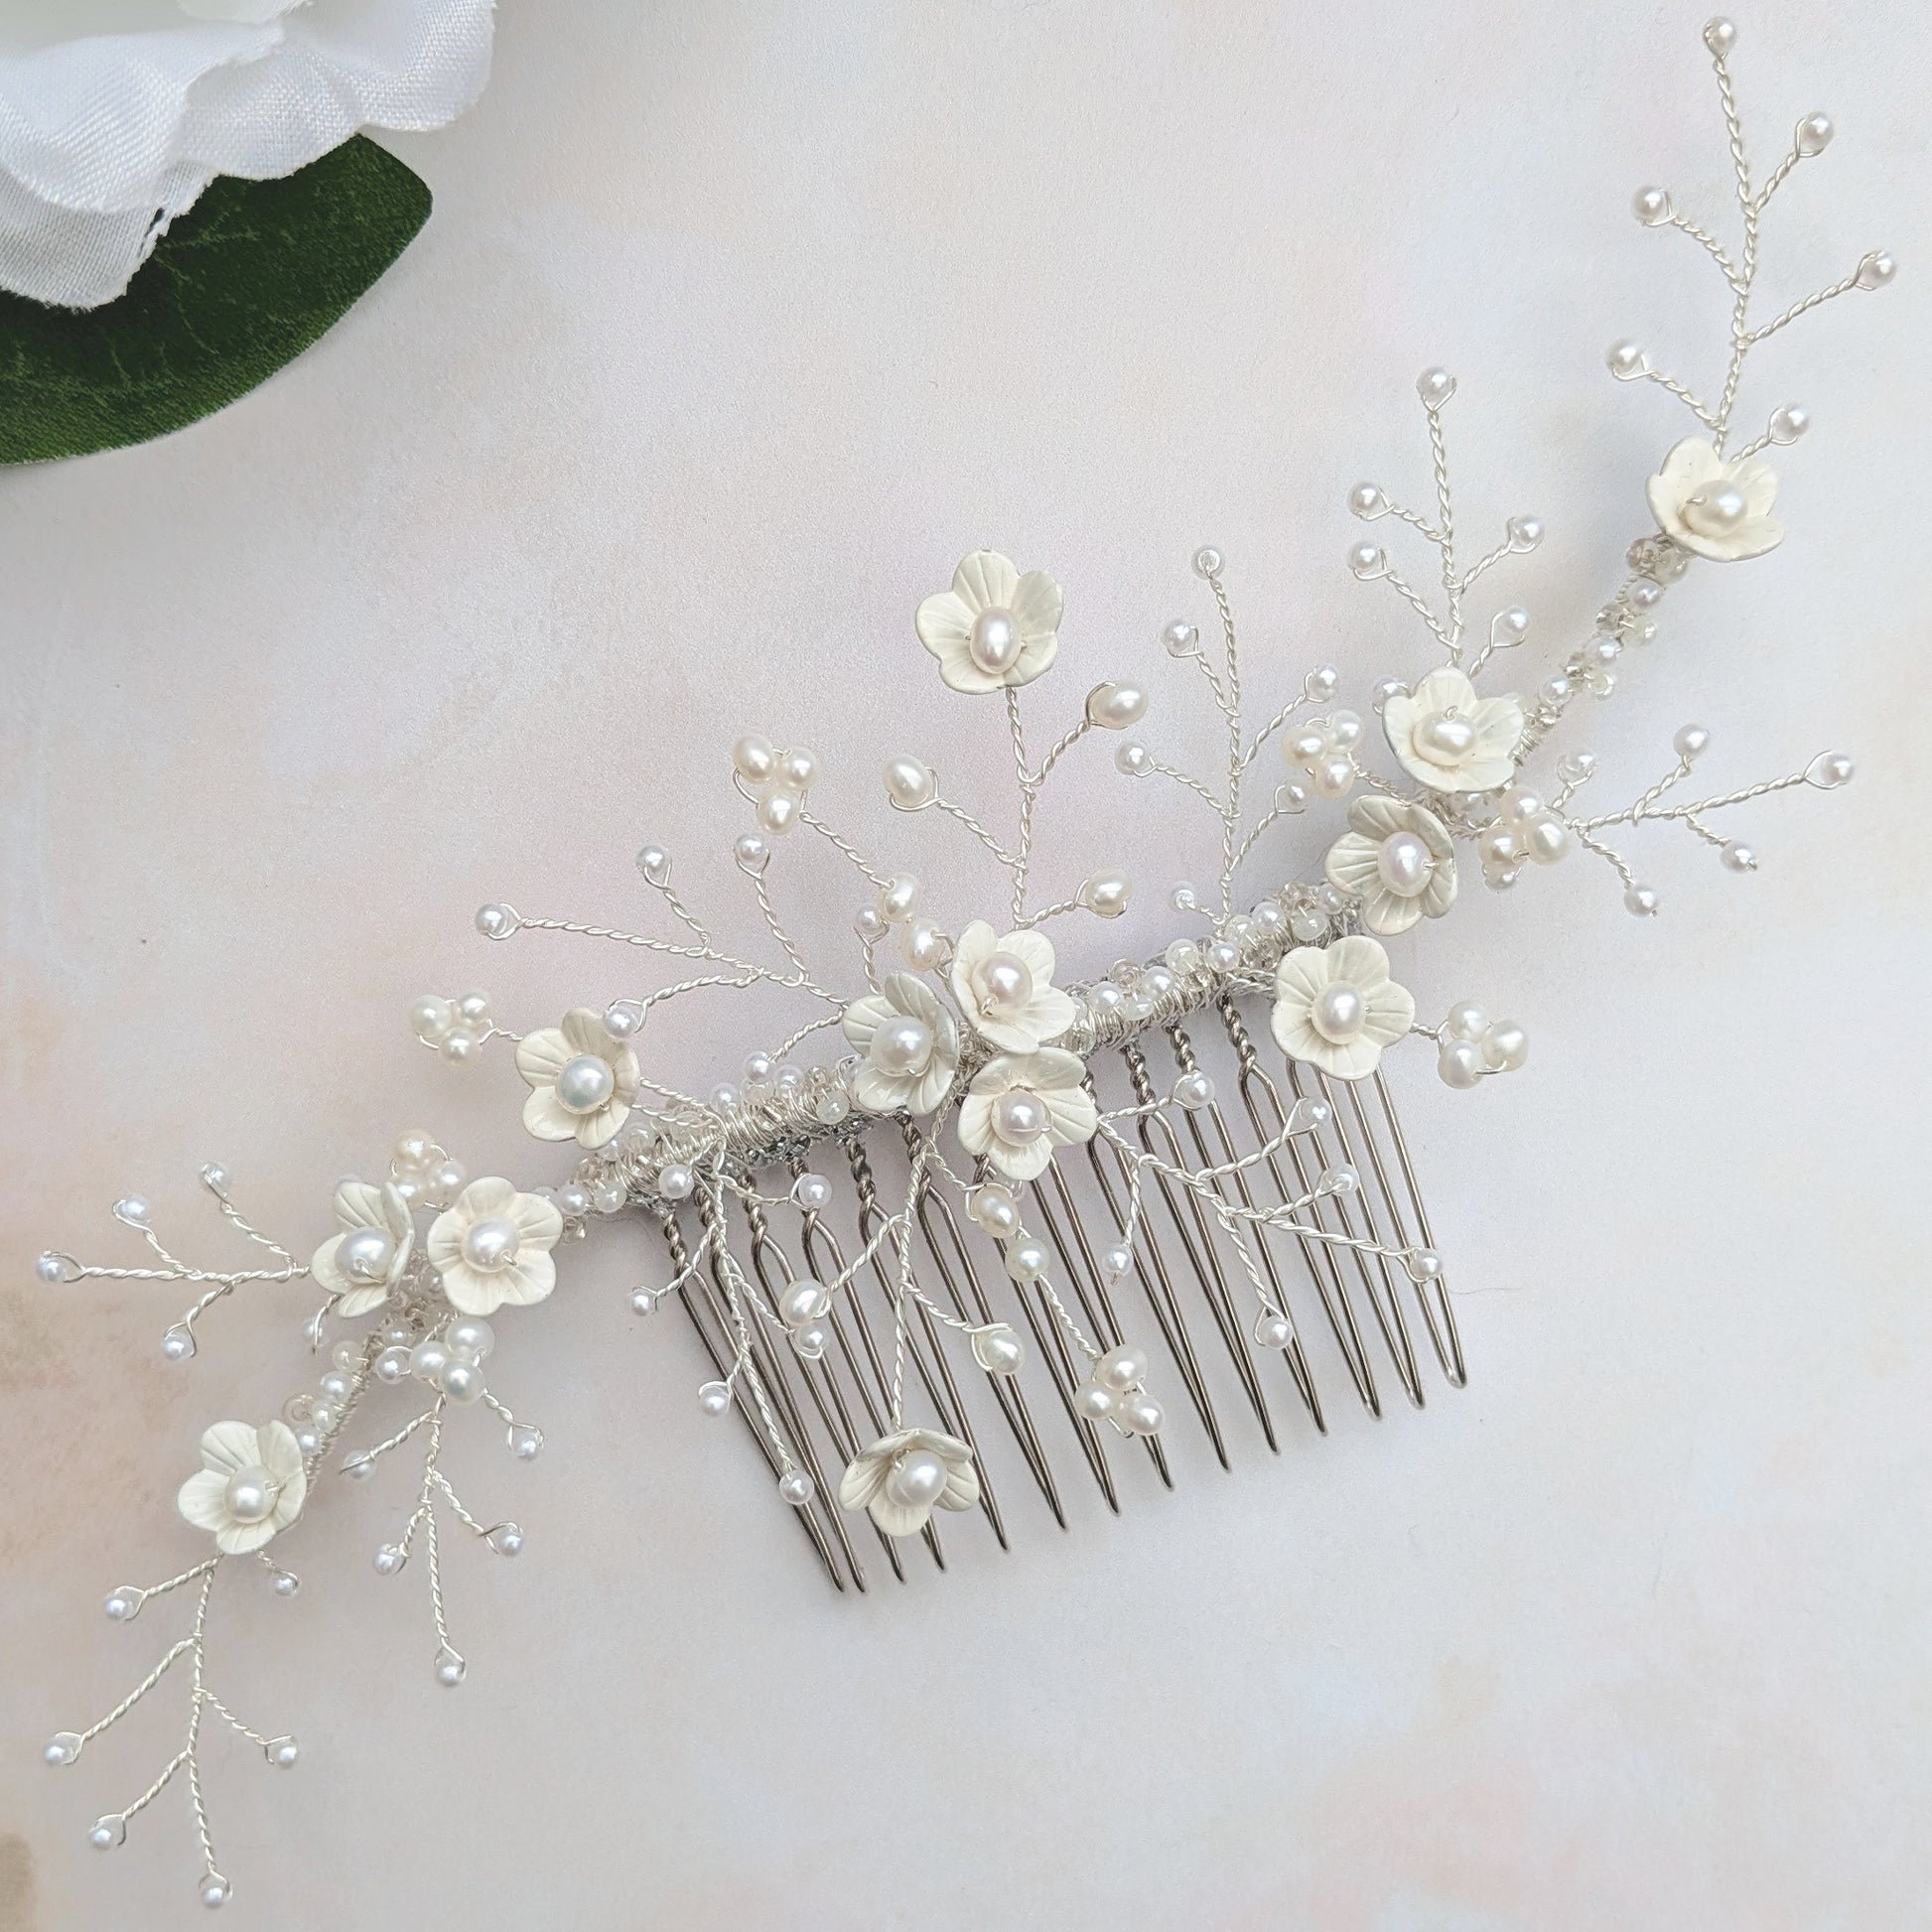 Modern floral headpiece for weddings - Susie Warner